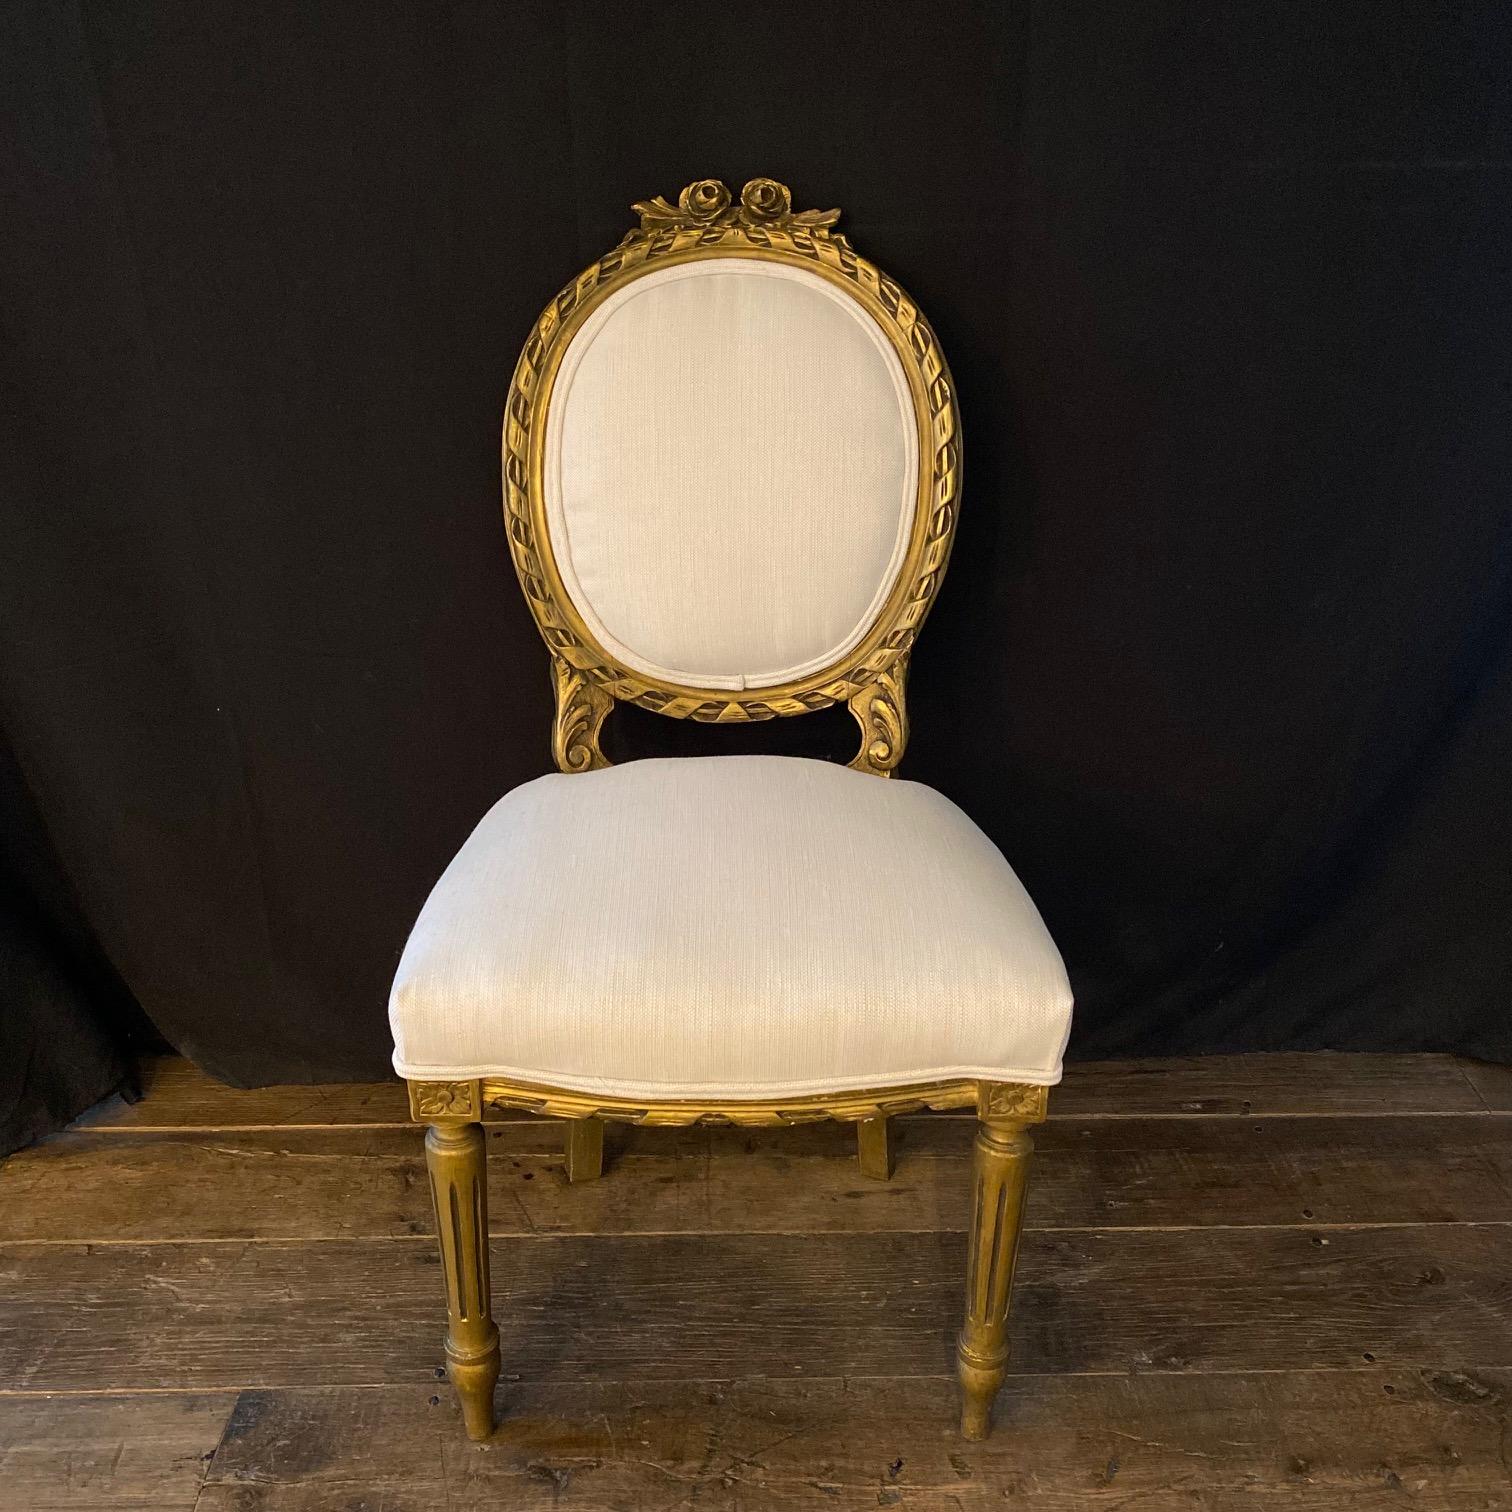 Moviestar glamourösen Paar Louis XVI Zeitraum geschnitzt Vergoldung Stühle. Wir lieben die schlichte Eleganz des Louis XVI-Stils, und diese Stühle weisen viele der für diesen Stil charakteristischen Details auf: eine ovale Rückenlehne, schöne